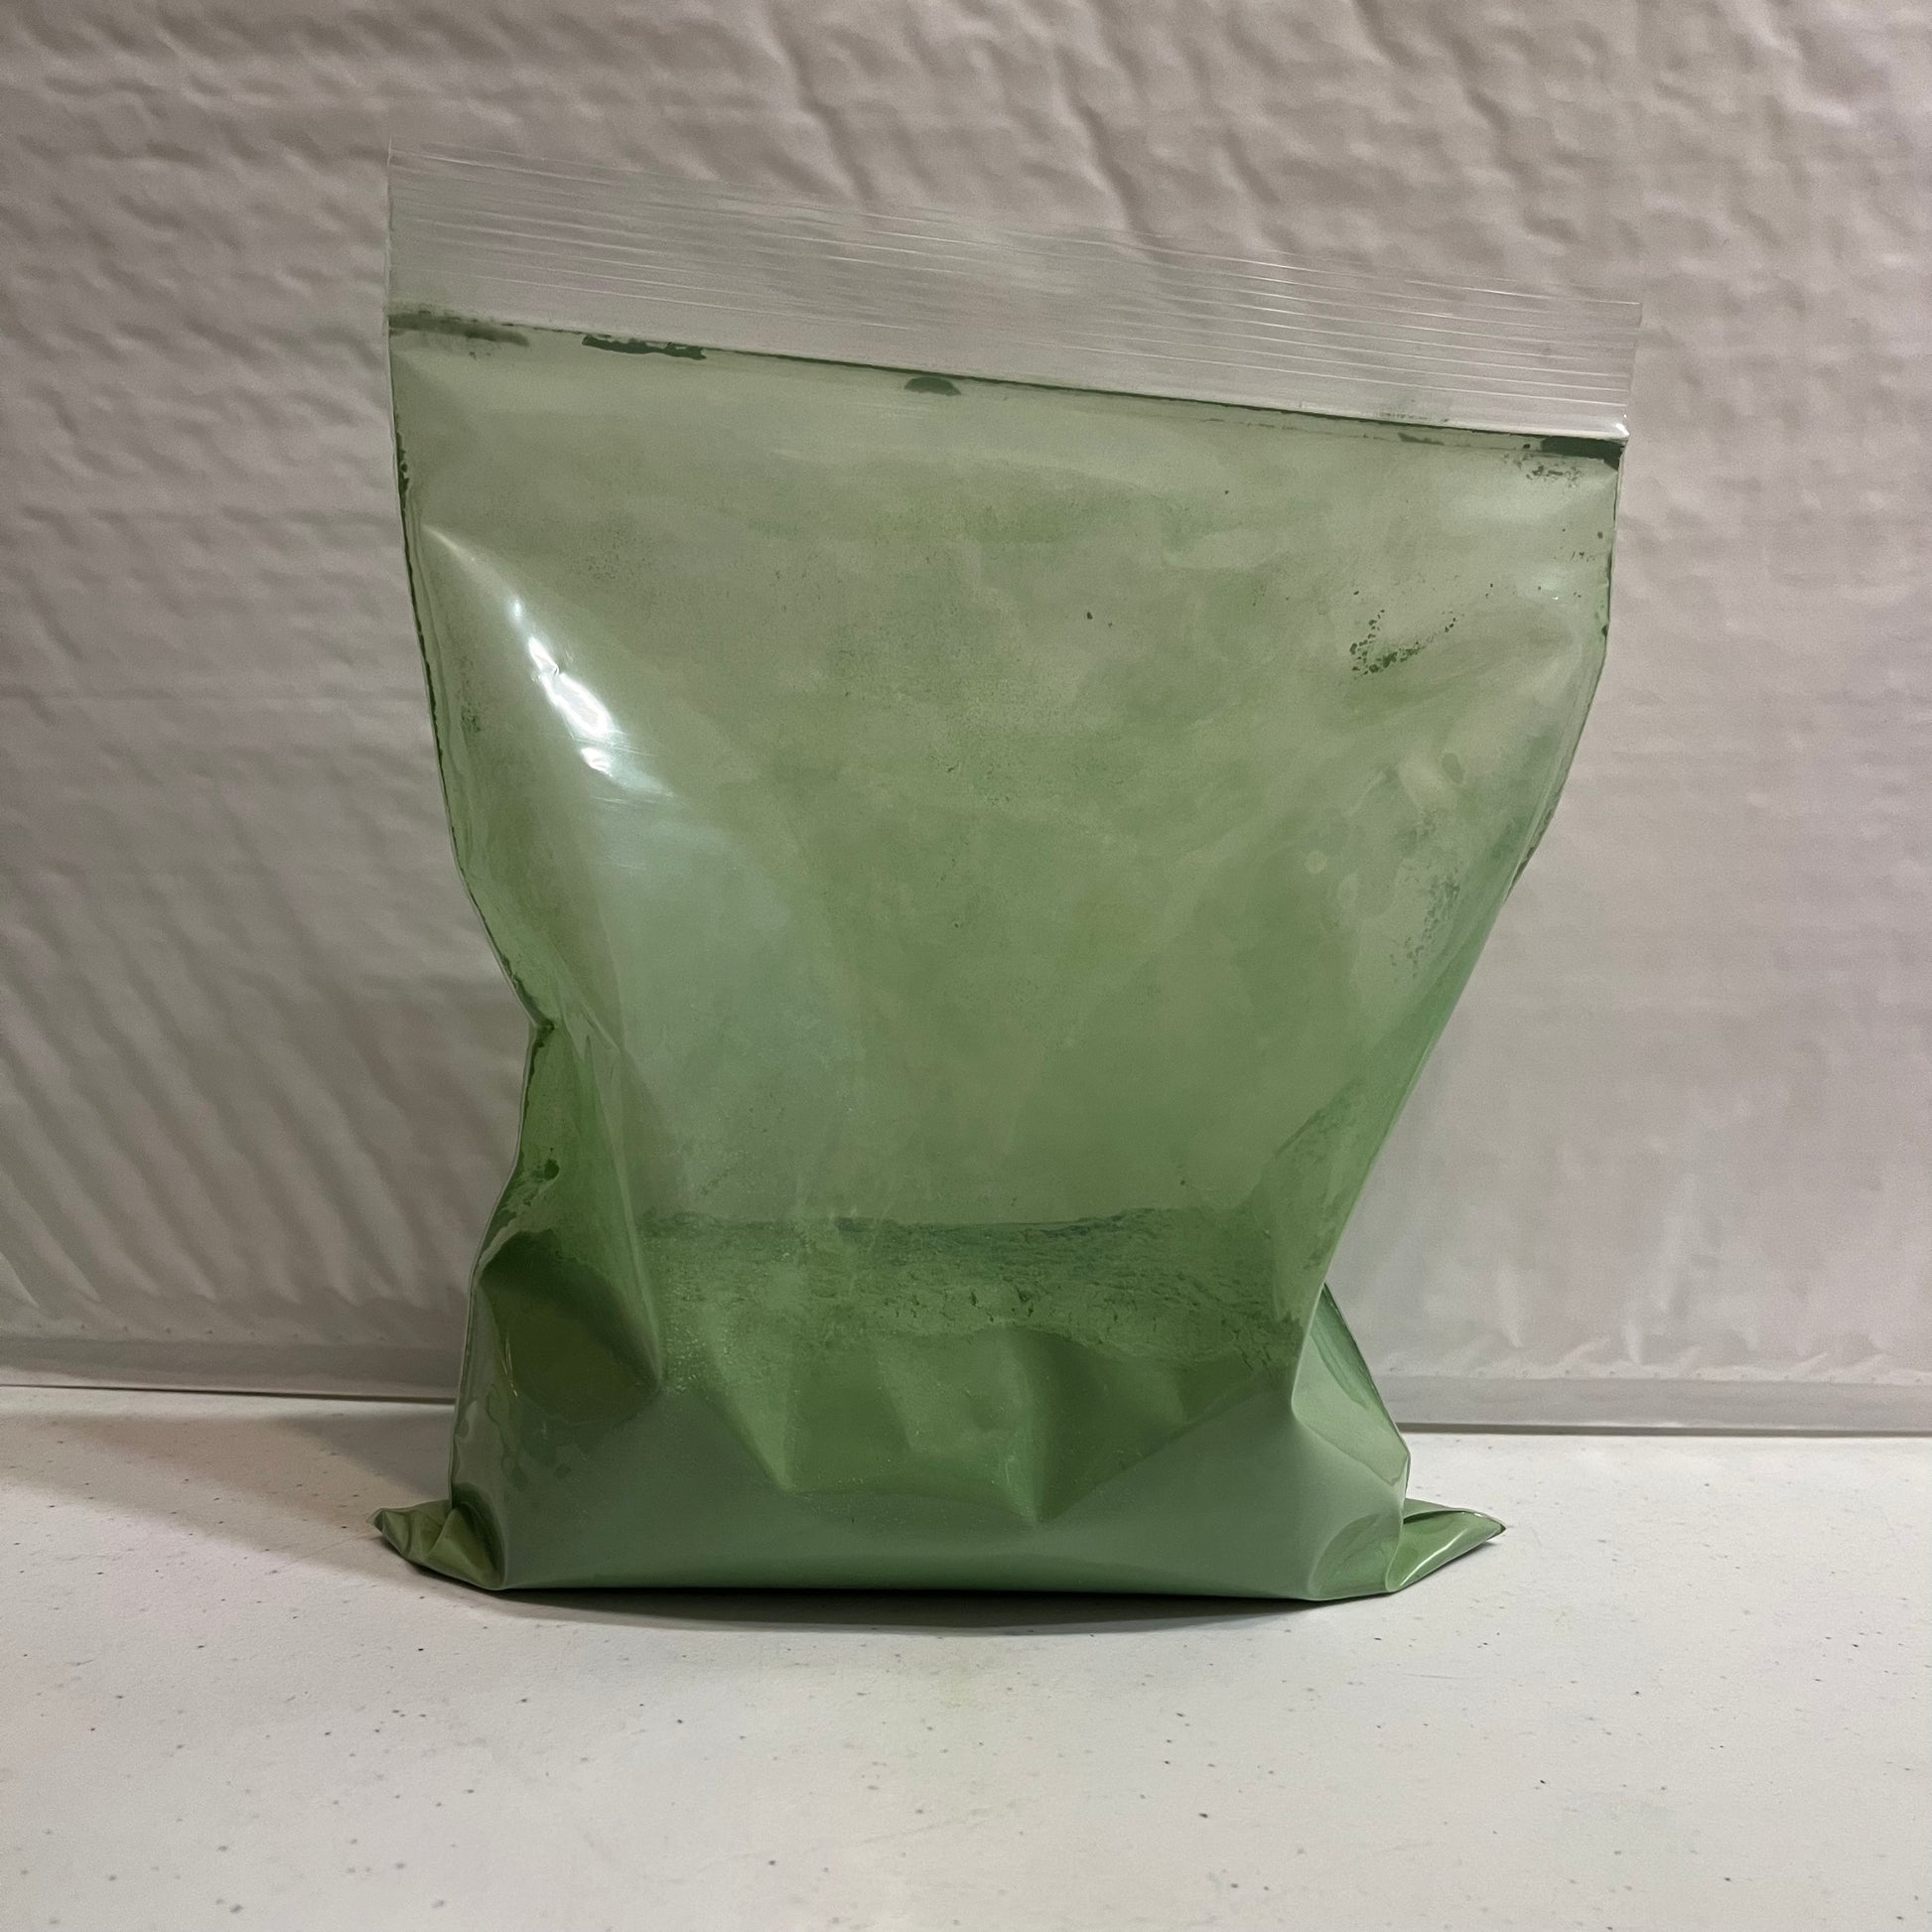 Gunge/Slime Powder 185g (10 Litres)- Vibrant Green, GUNGE